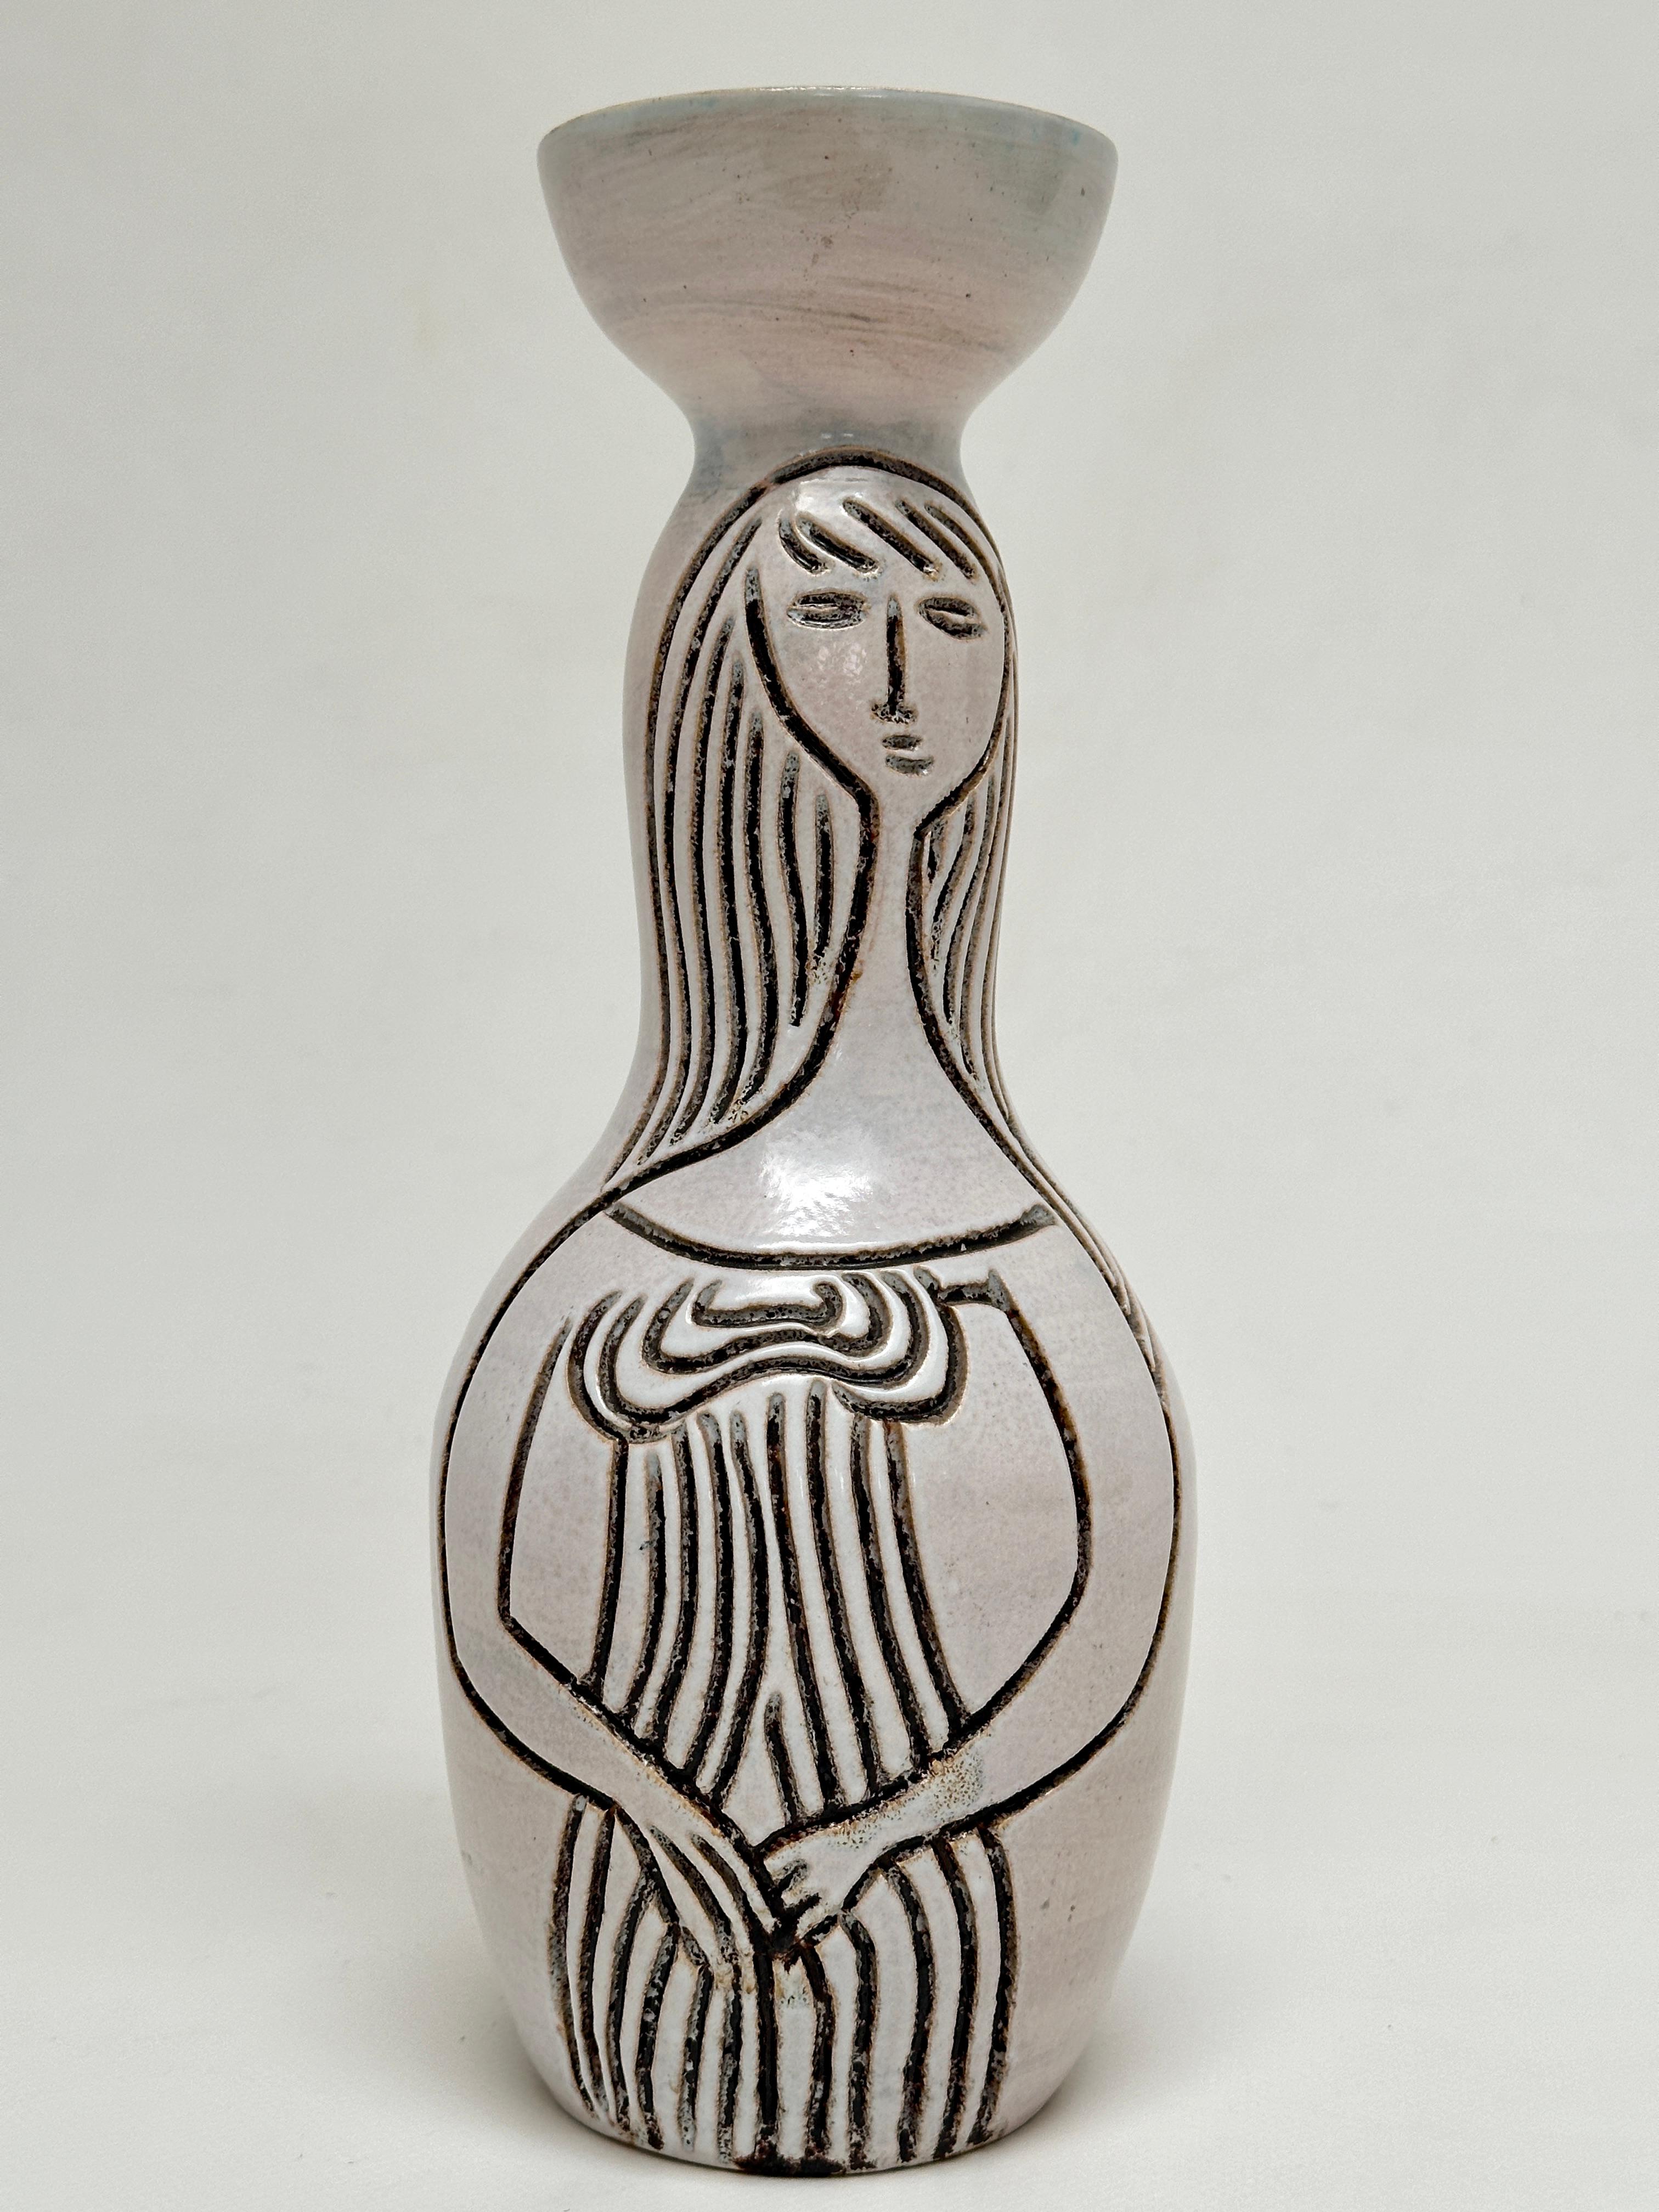 Vase biomorphe à motifs scarifiés de 2 silhouettes féminines sur émail blanc laiteux brillant.


Accolay désigne à la fois le lieu (Bourgogne du Sud) et le nom d'une communauté de céramistes dont l'activité foisonnante sera sur près de 50 ans. Fondé